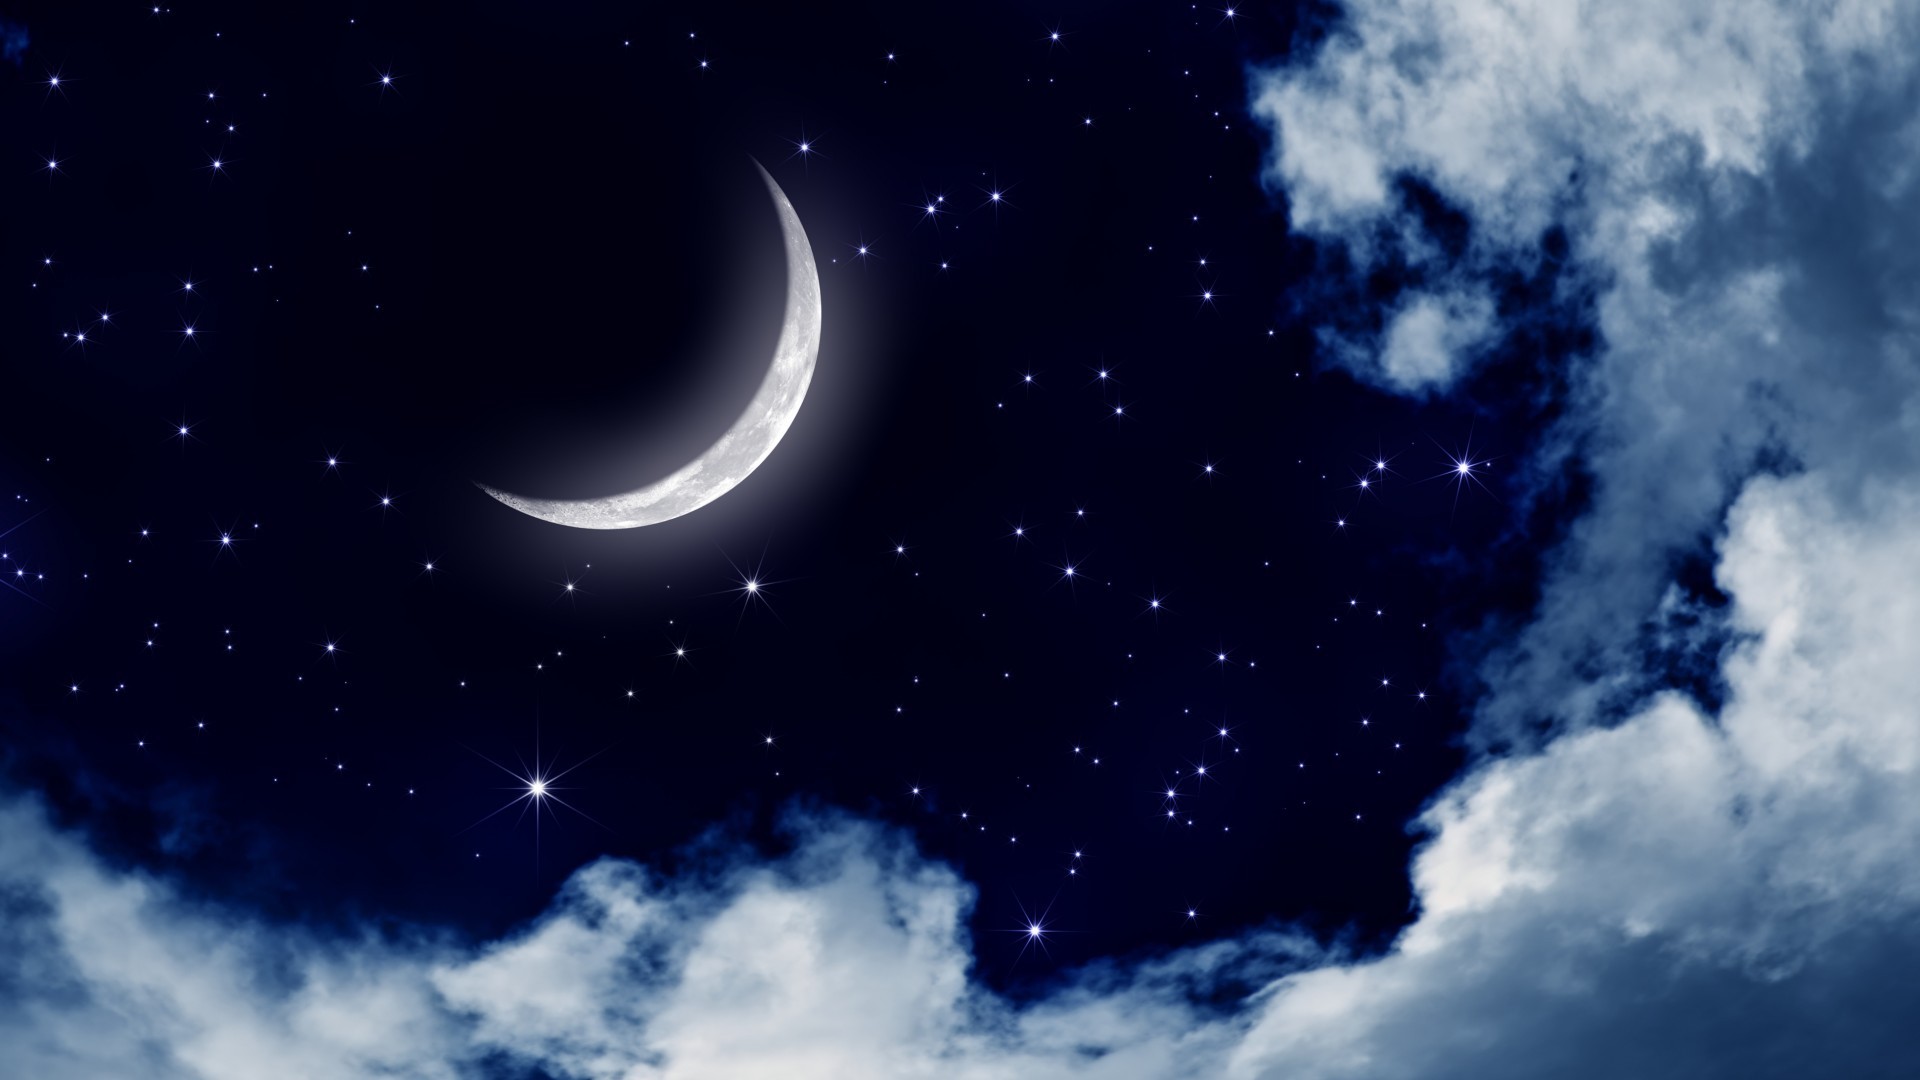 Скачать обои бесплатно Облака, Небо, Ночь, Луна, Пейзаж картинка на рабочий стол ПК